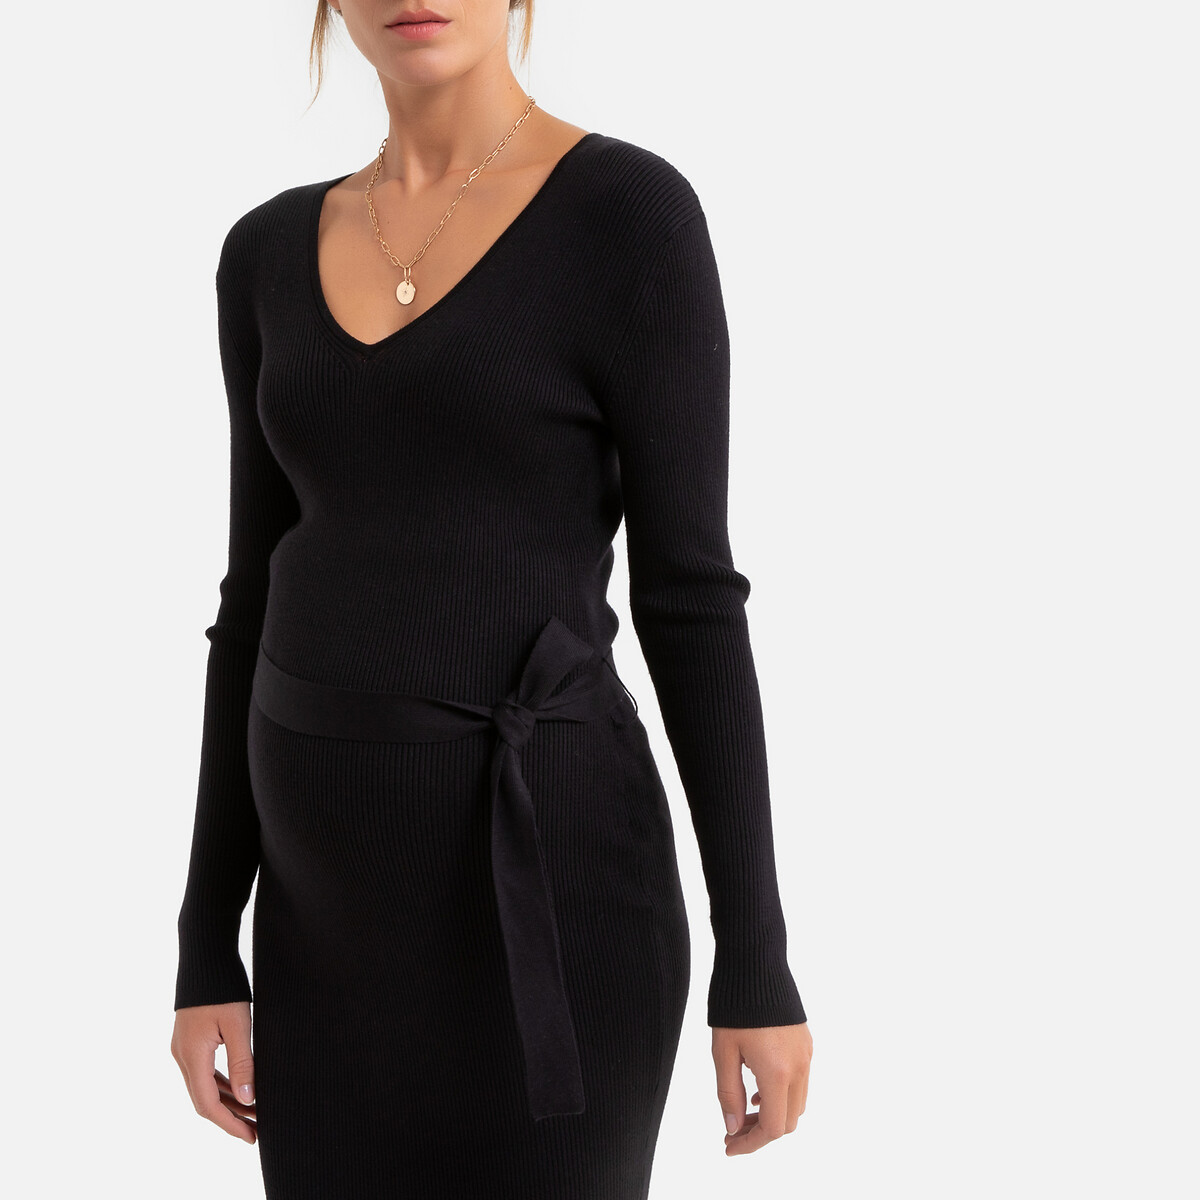 Платье-пуловер La Redoute Длинное для периода беременности длинные рукава S черный, размер S - фото 3